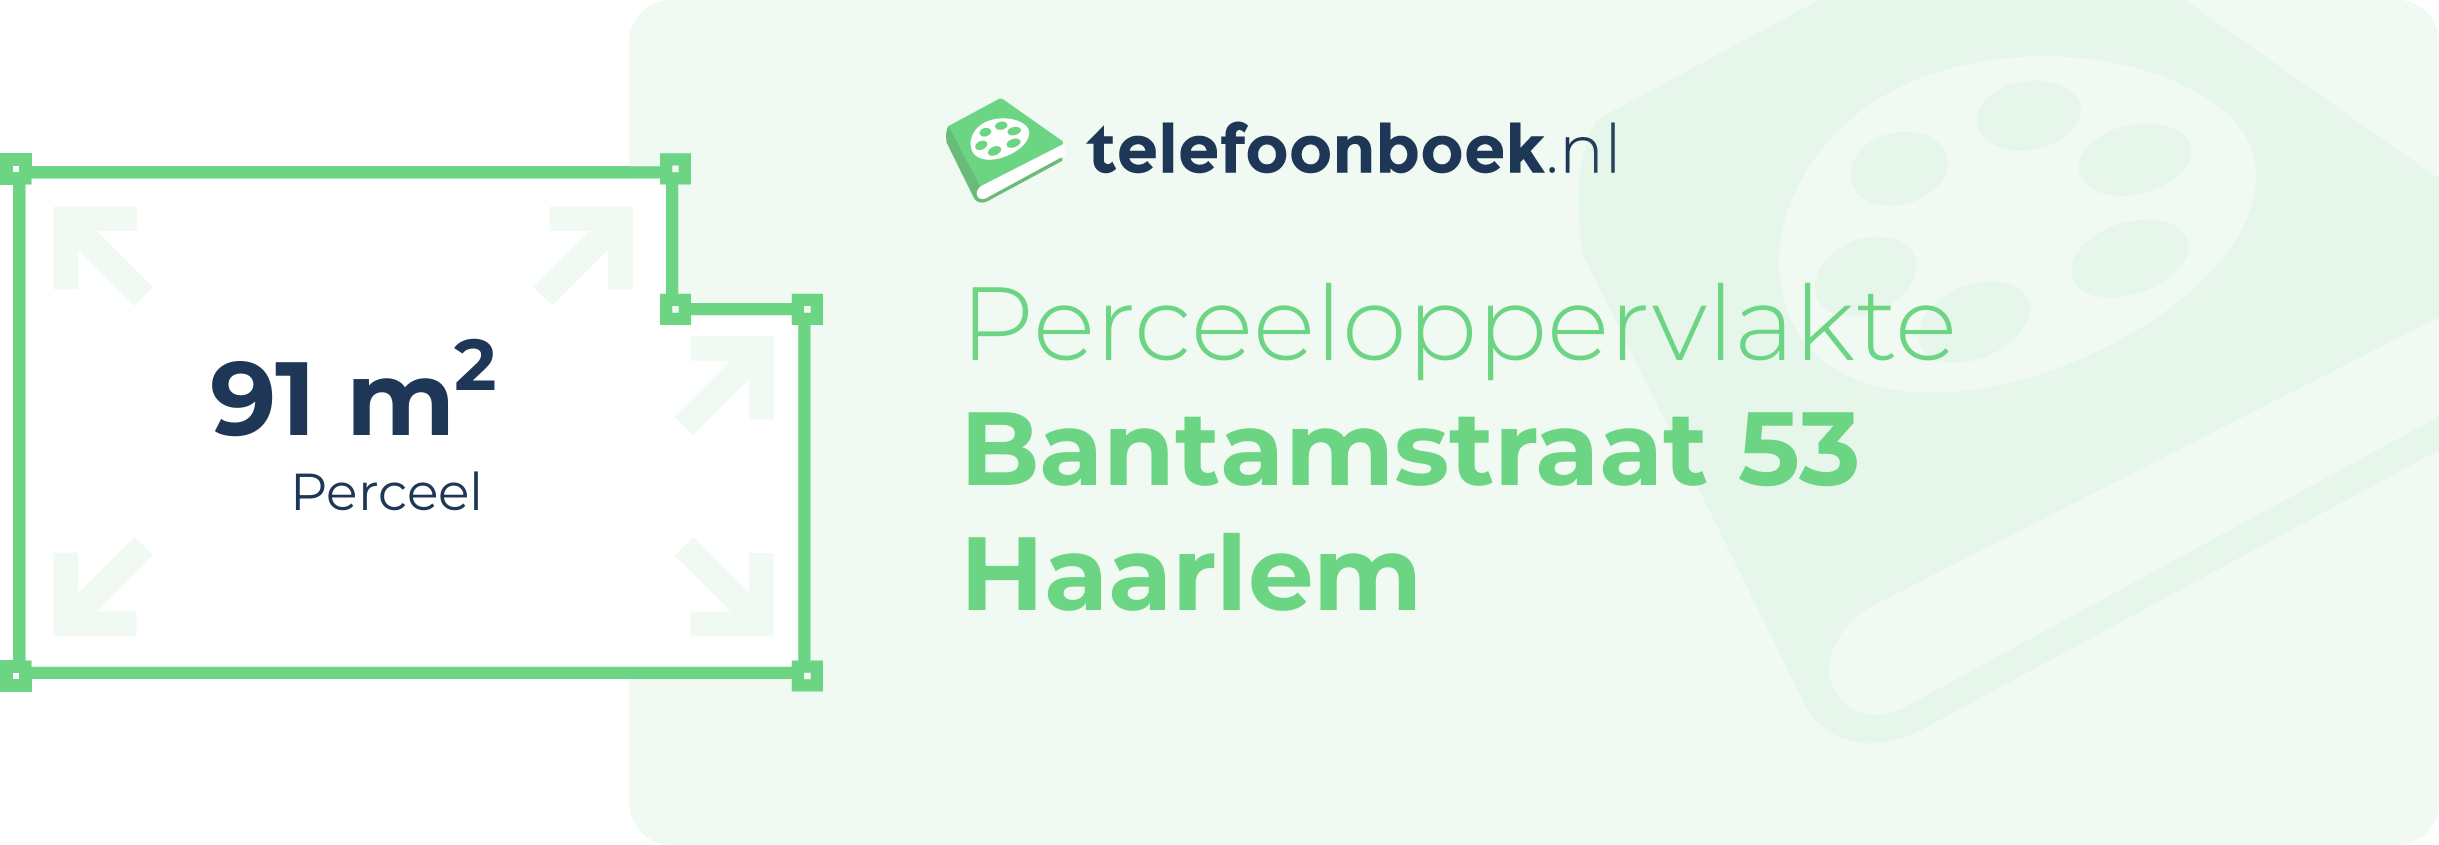 Perceeloppervlakte Bantamstraat 53 Haarlem